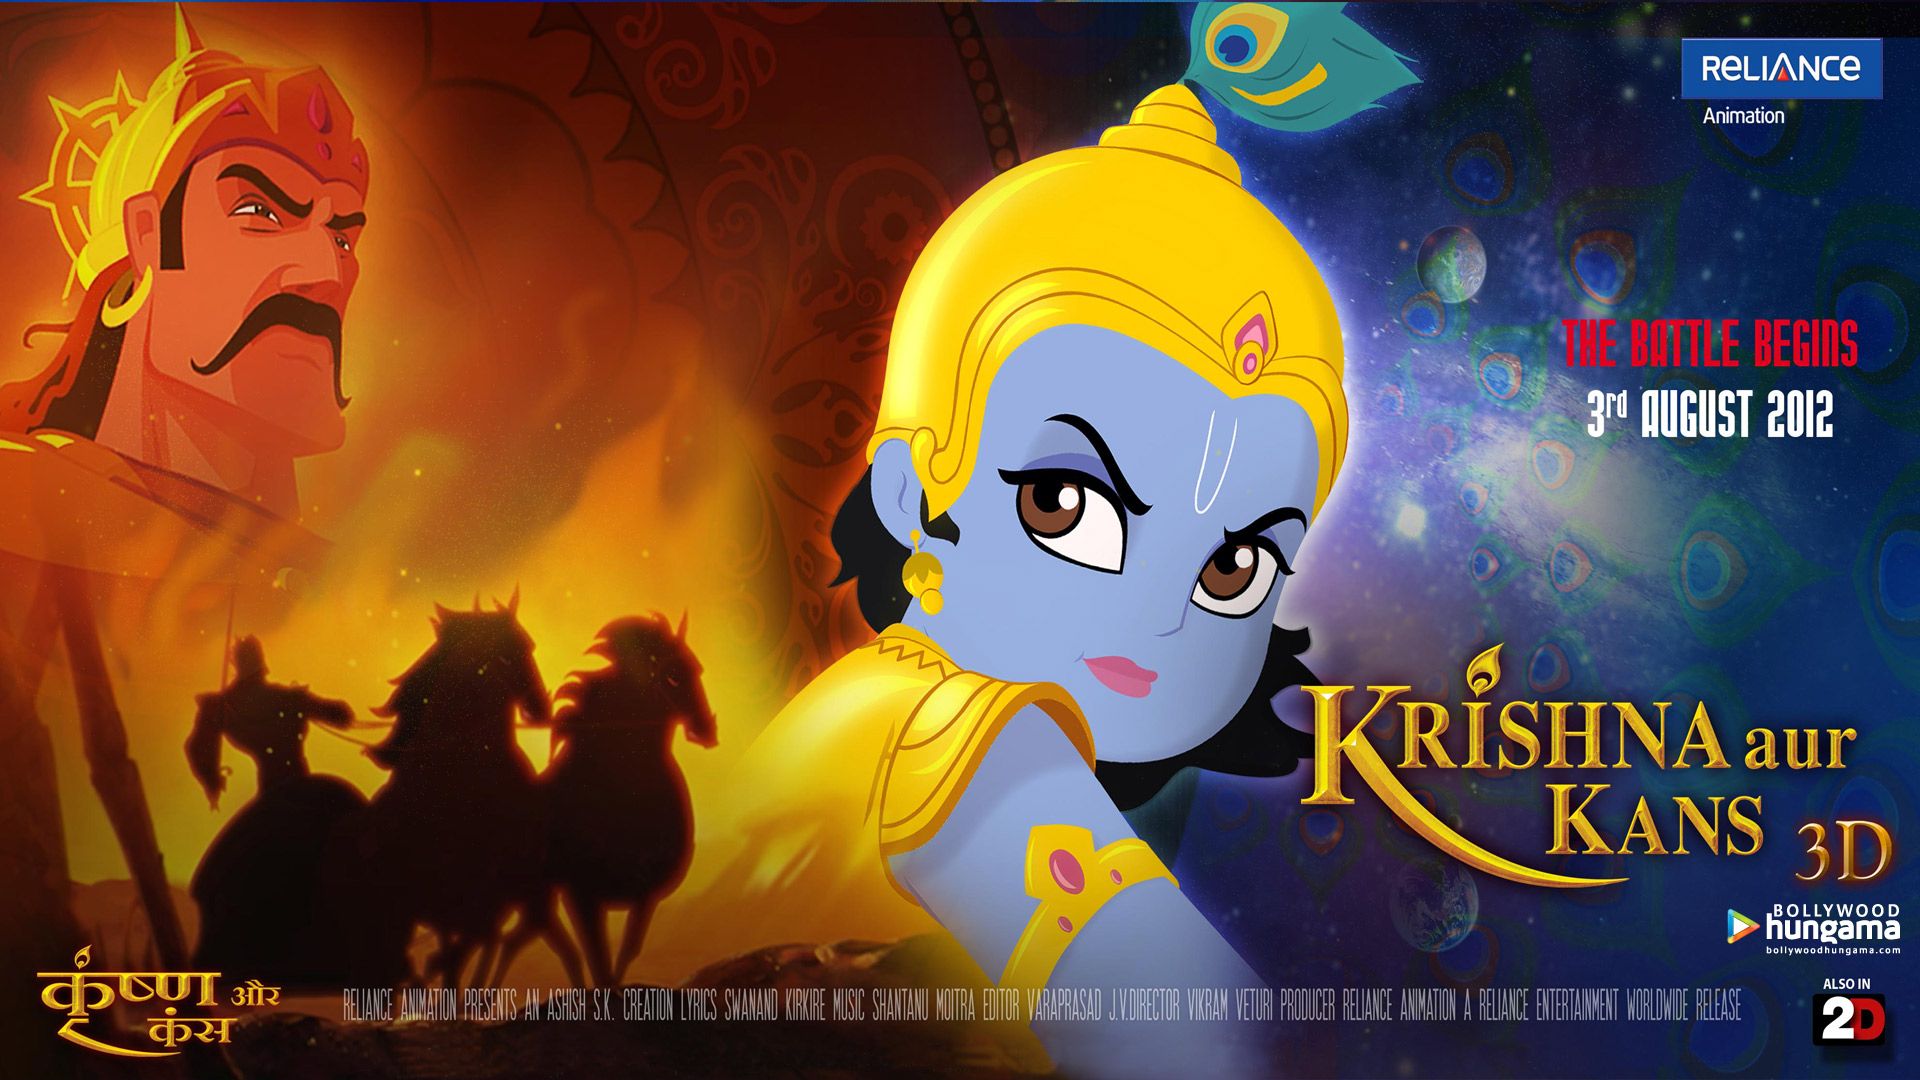 Krishna Aur Kans 2012 Wallpaper. Krishna Aur Kans 2